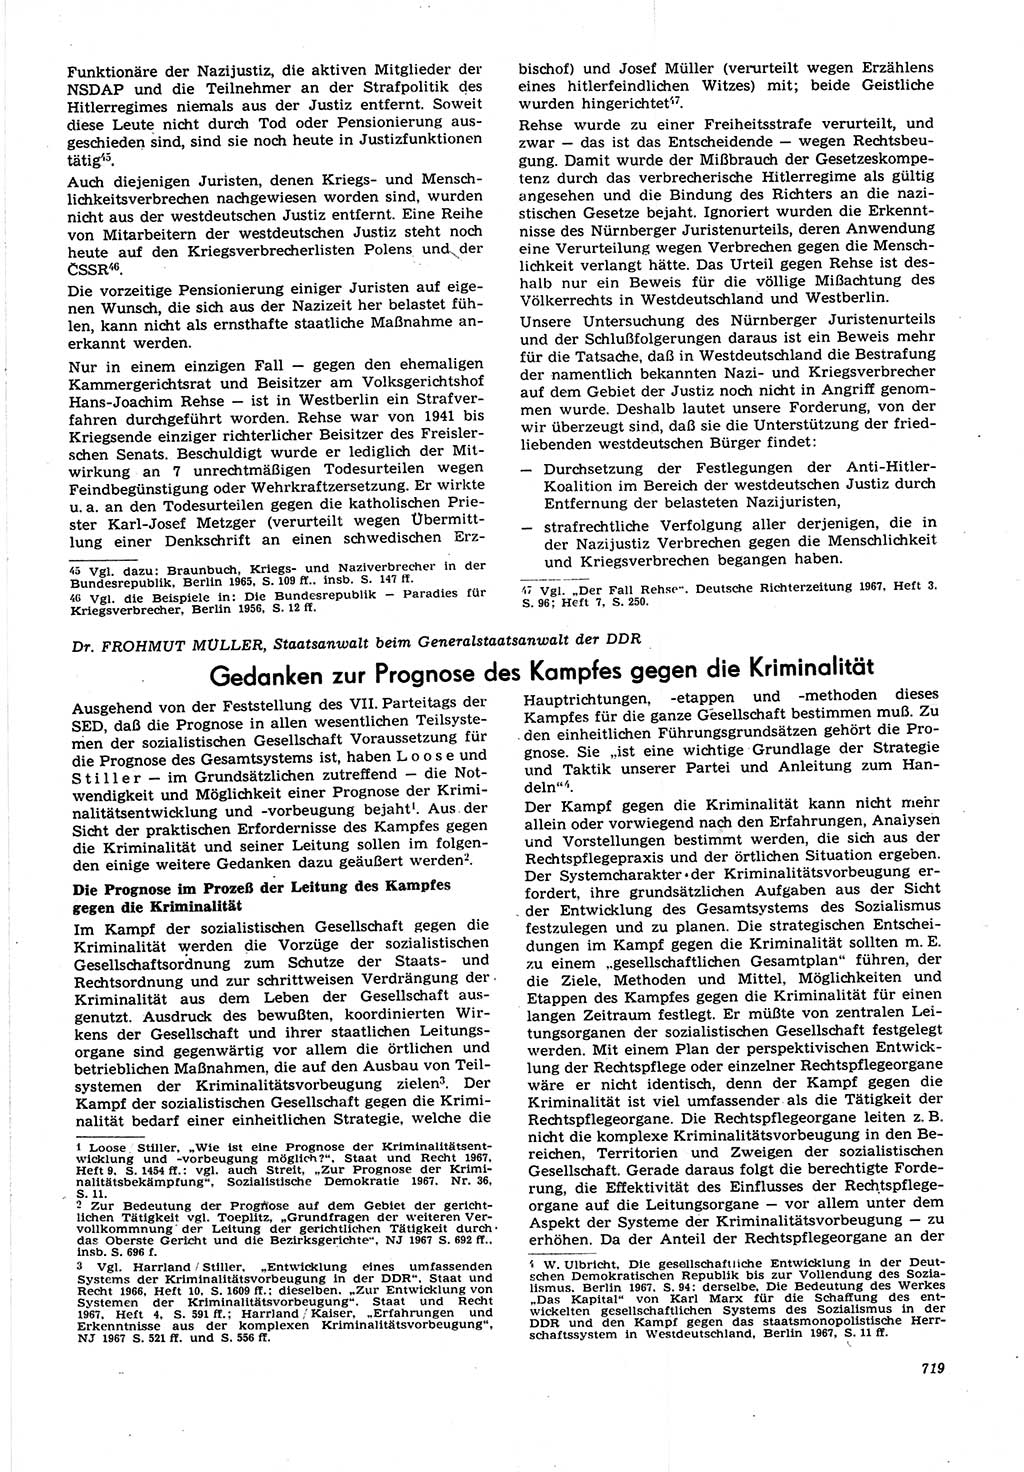 Neue Justiz (NJ), Zeitschrift für Recht und Rechtswissenschaft [Deutsche Demokratische Republik (DDR)], 21. Jahrgang 1967, Seite 719 (NJ DDR 1967, S. 719)